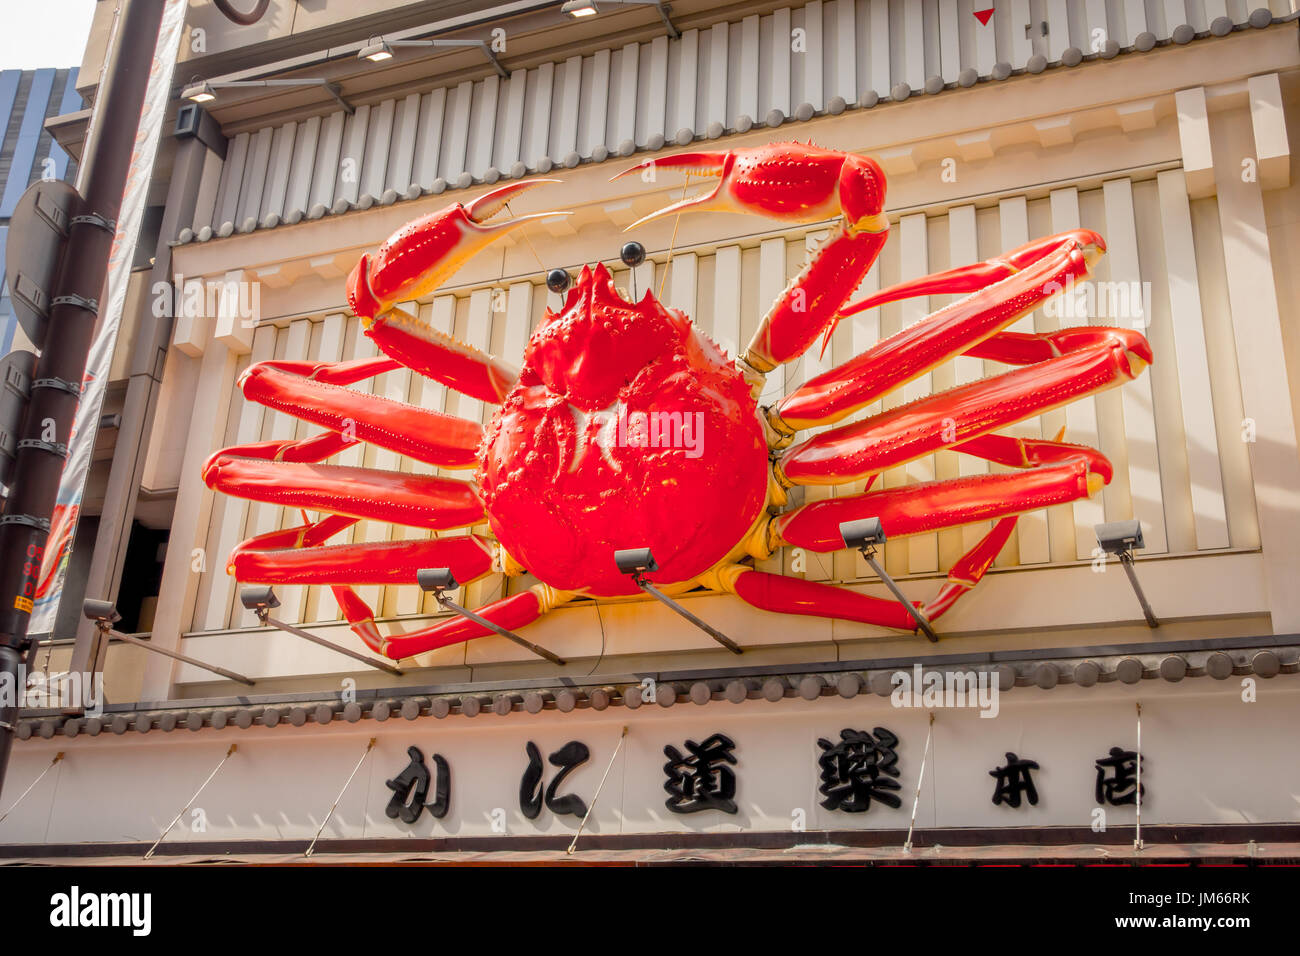 OSAKA, JAPAN - JULY 18, 2017: Crab figure of Kani Doraku restaurant in Dotonbori district in Osaka, Japan Stock Photo